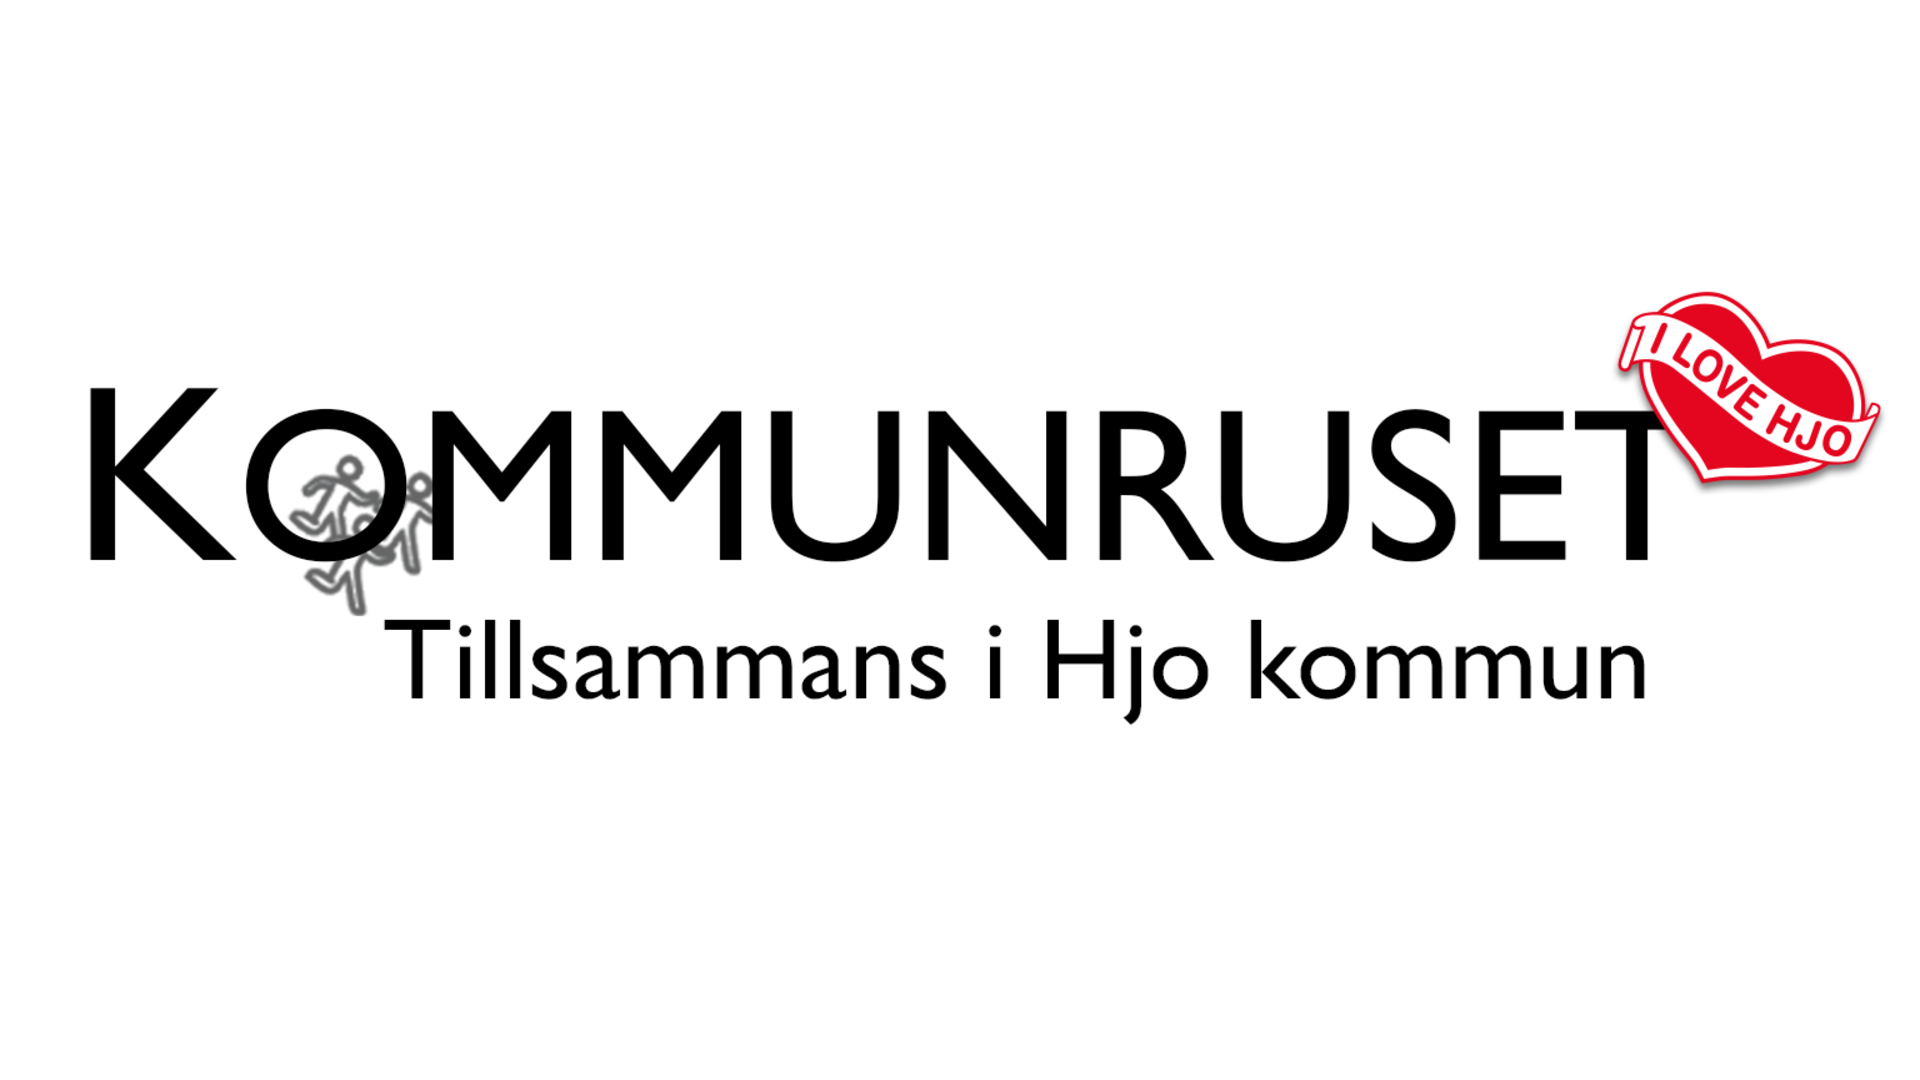 Logotyp för Kommunruset med texten "Tillsammans i Hjo kommun. Svart text på vit bakgrund.